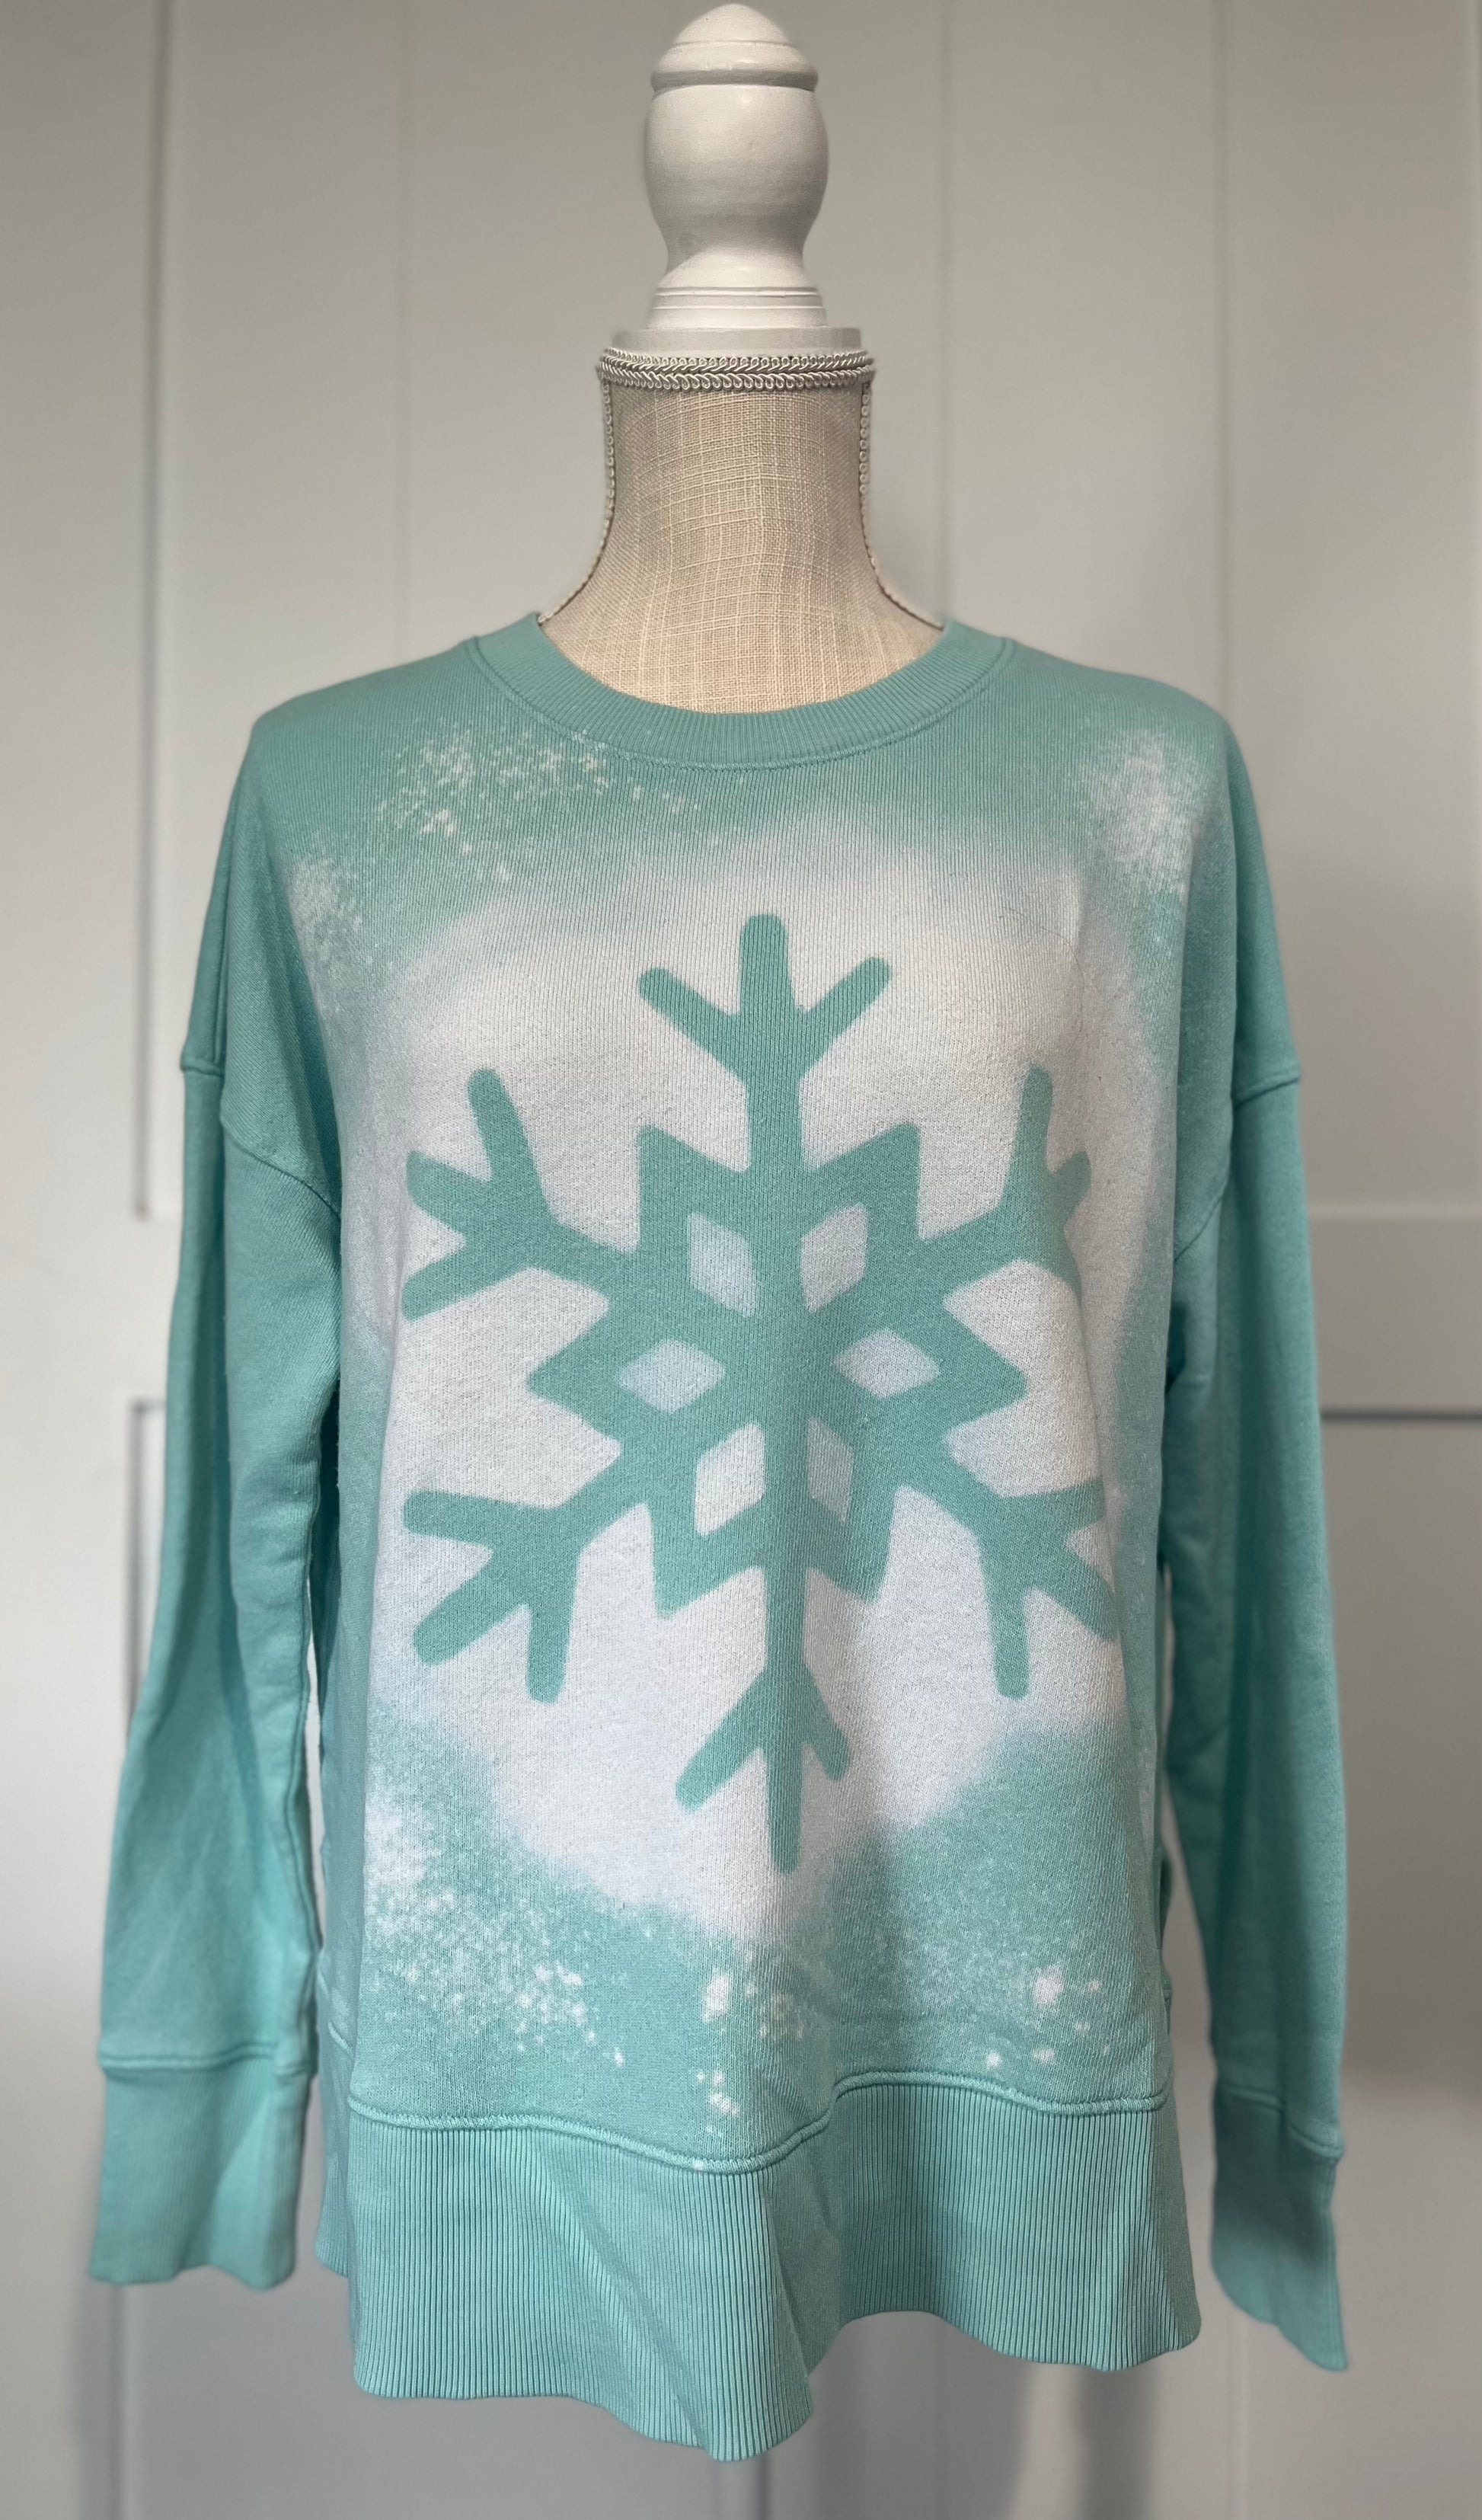 Snowflake Sweatshirt in Teal